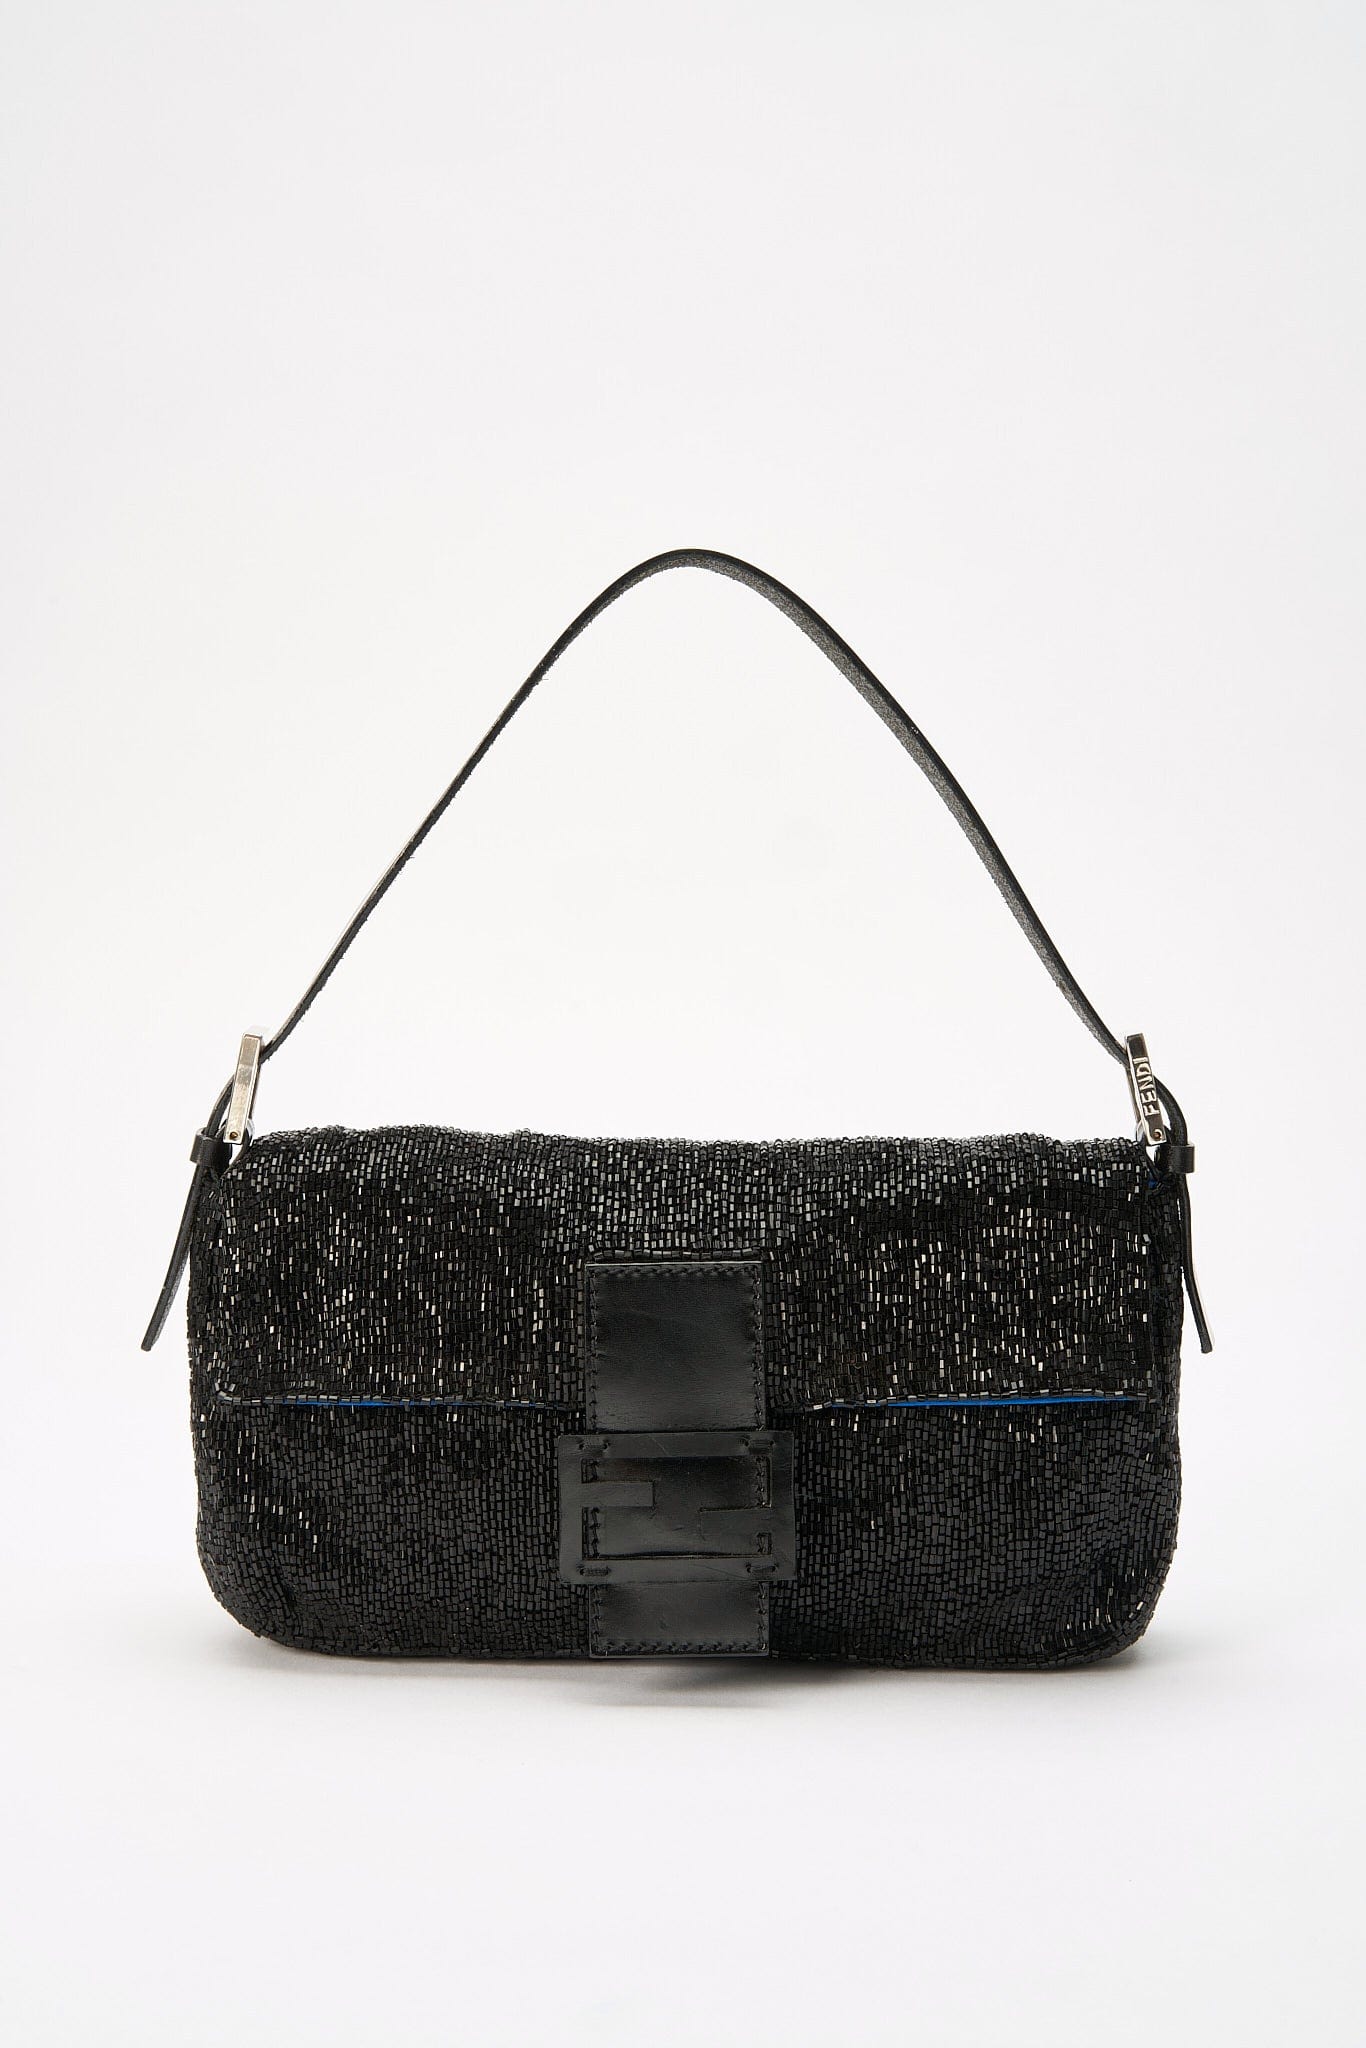 Vintage Fendi Black Leather Baguette Bag